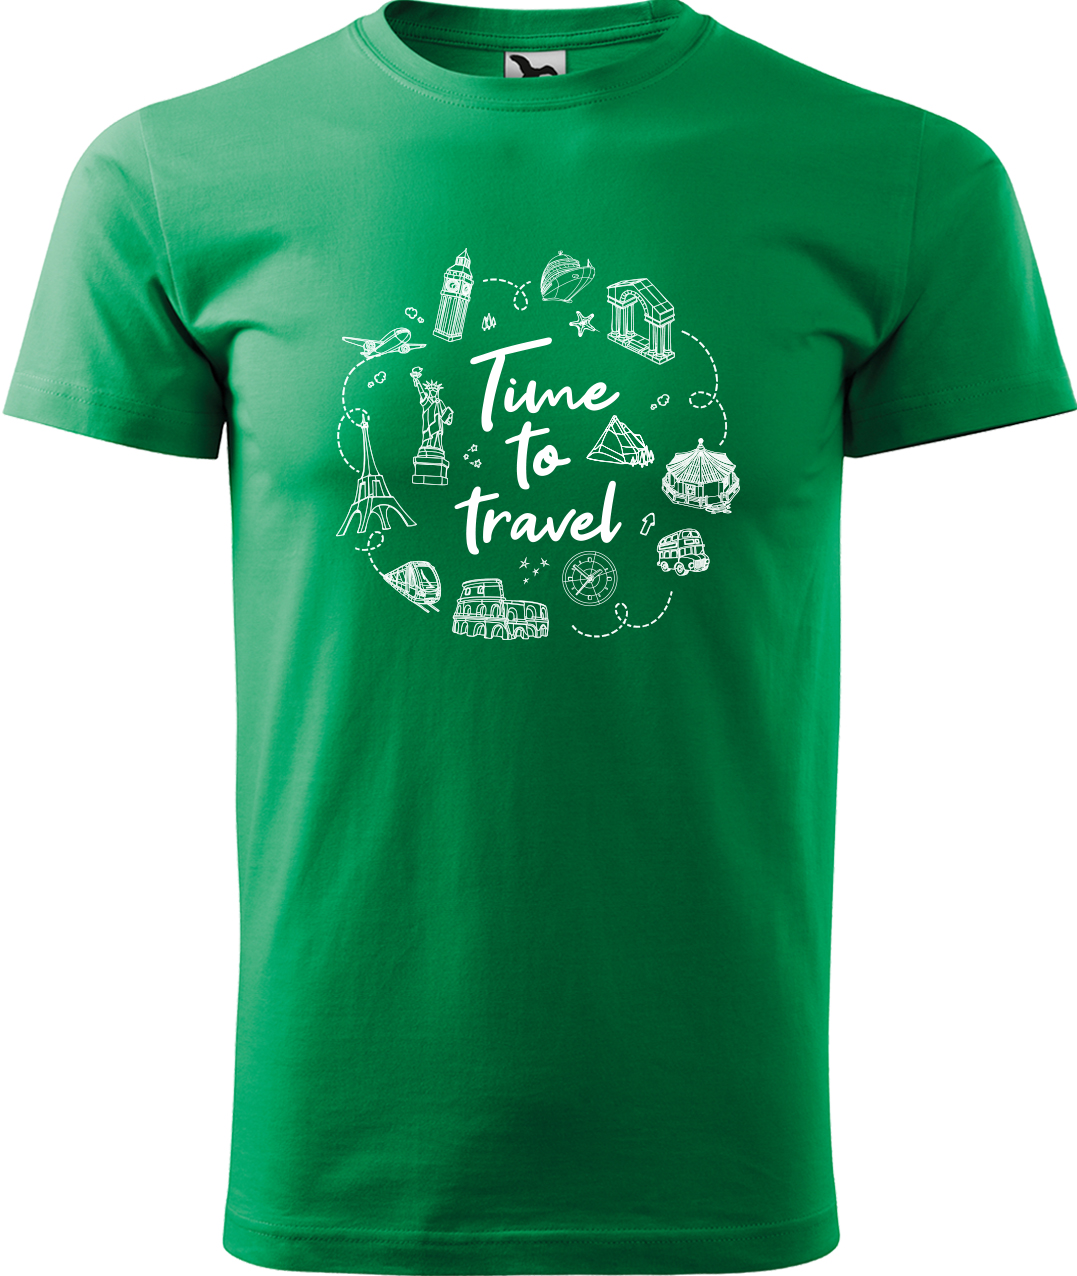 Pánské cestovatelské tričko - Time to travel Velikost: L, Barva: Středně zelená (16), Střih: pánský